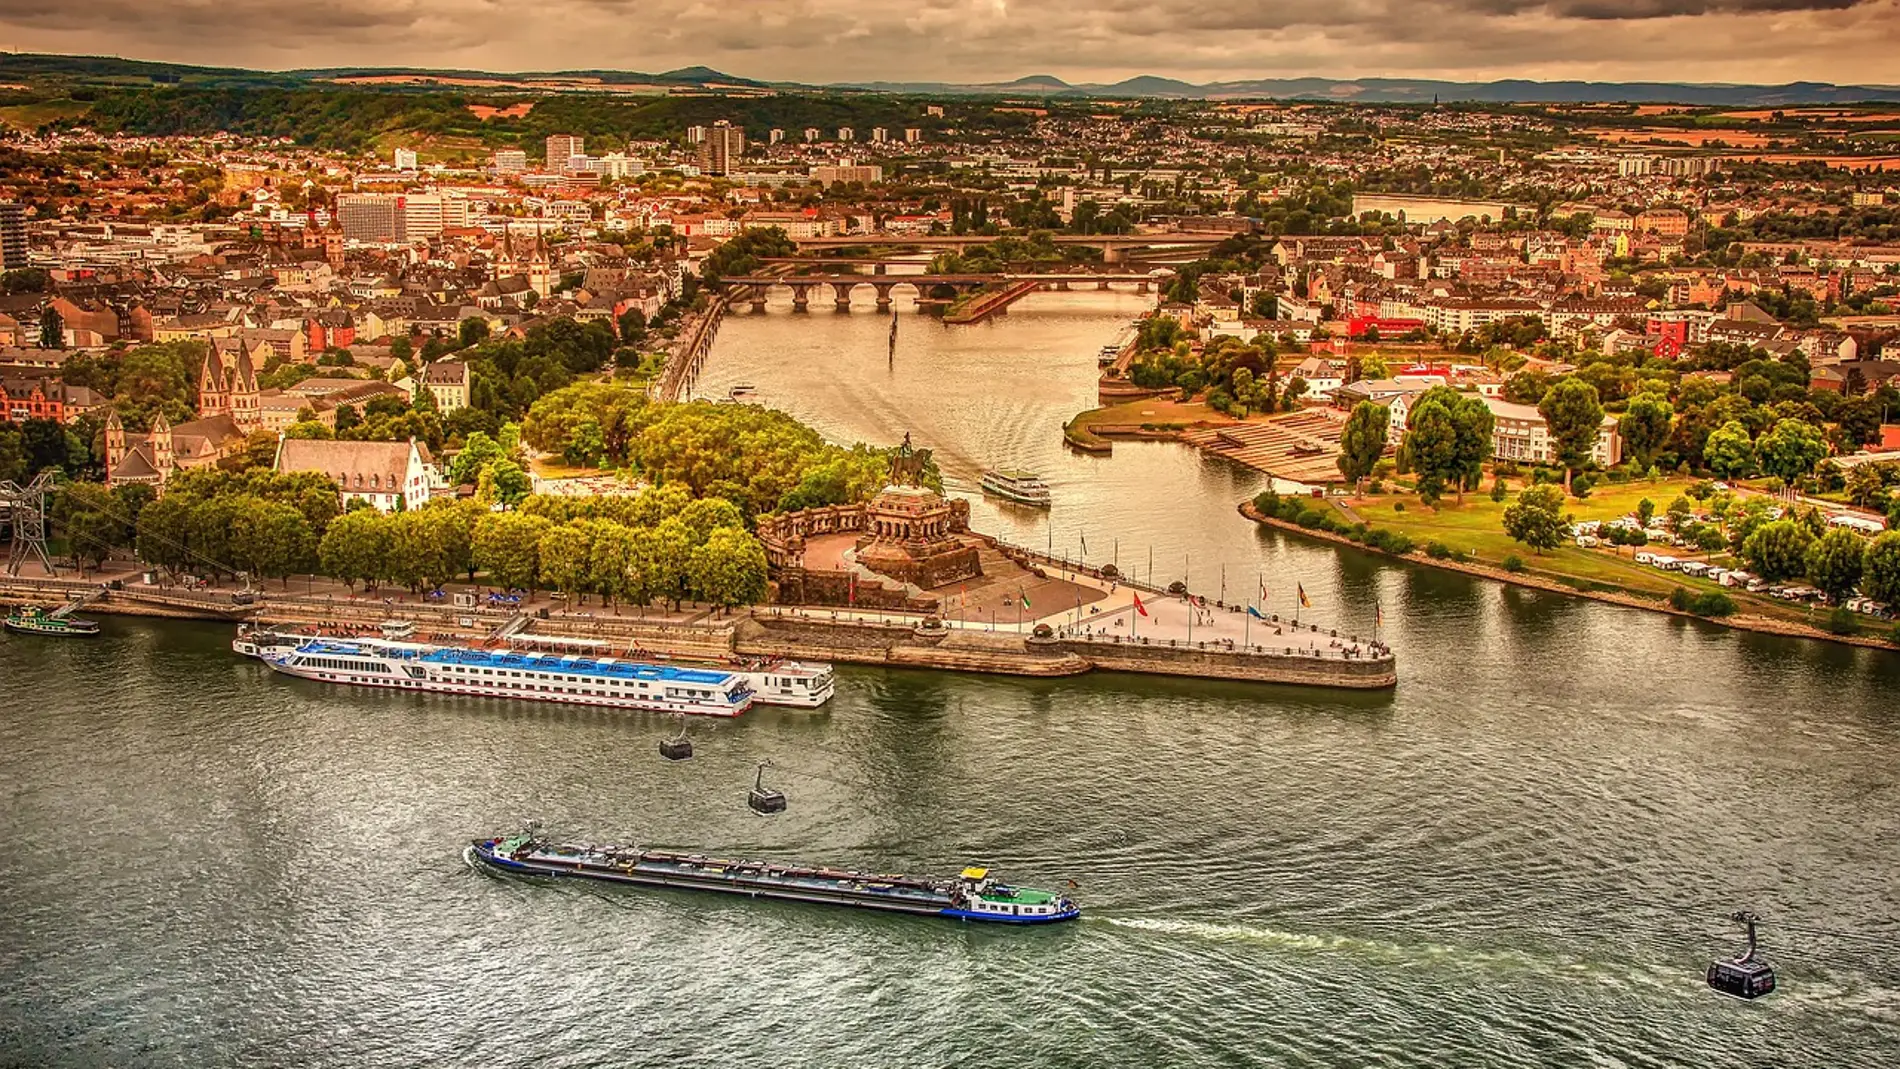 Crucero fluvial por el río Rin